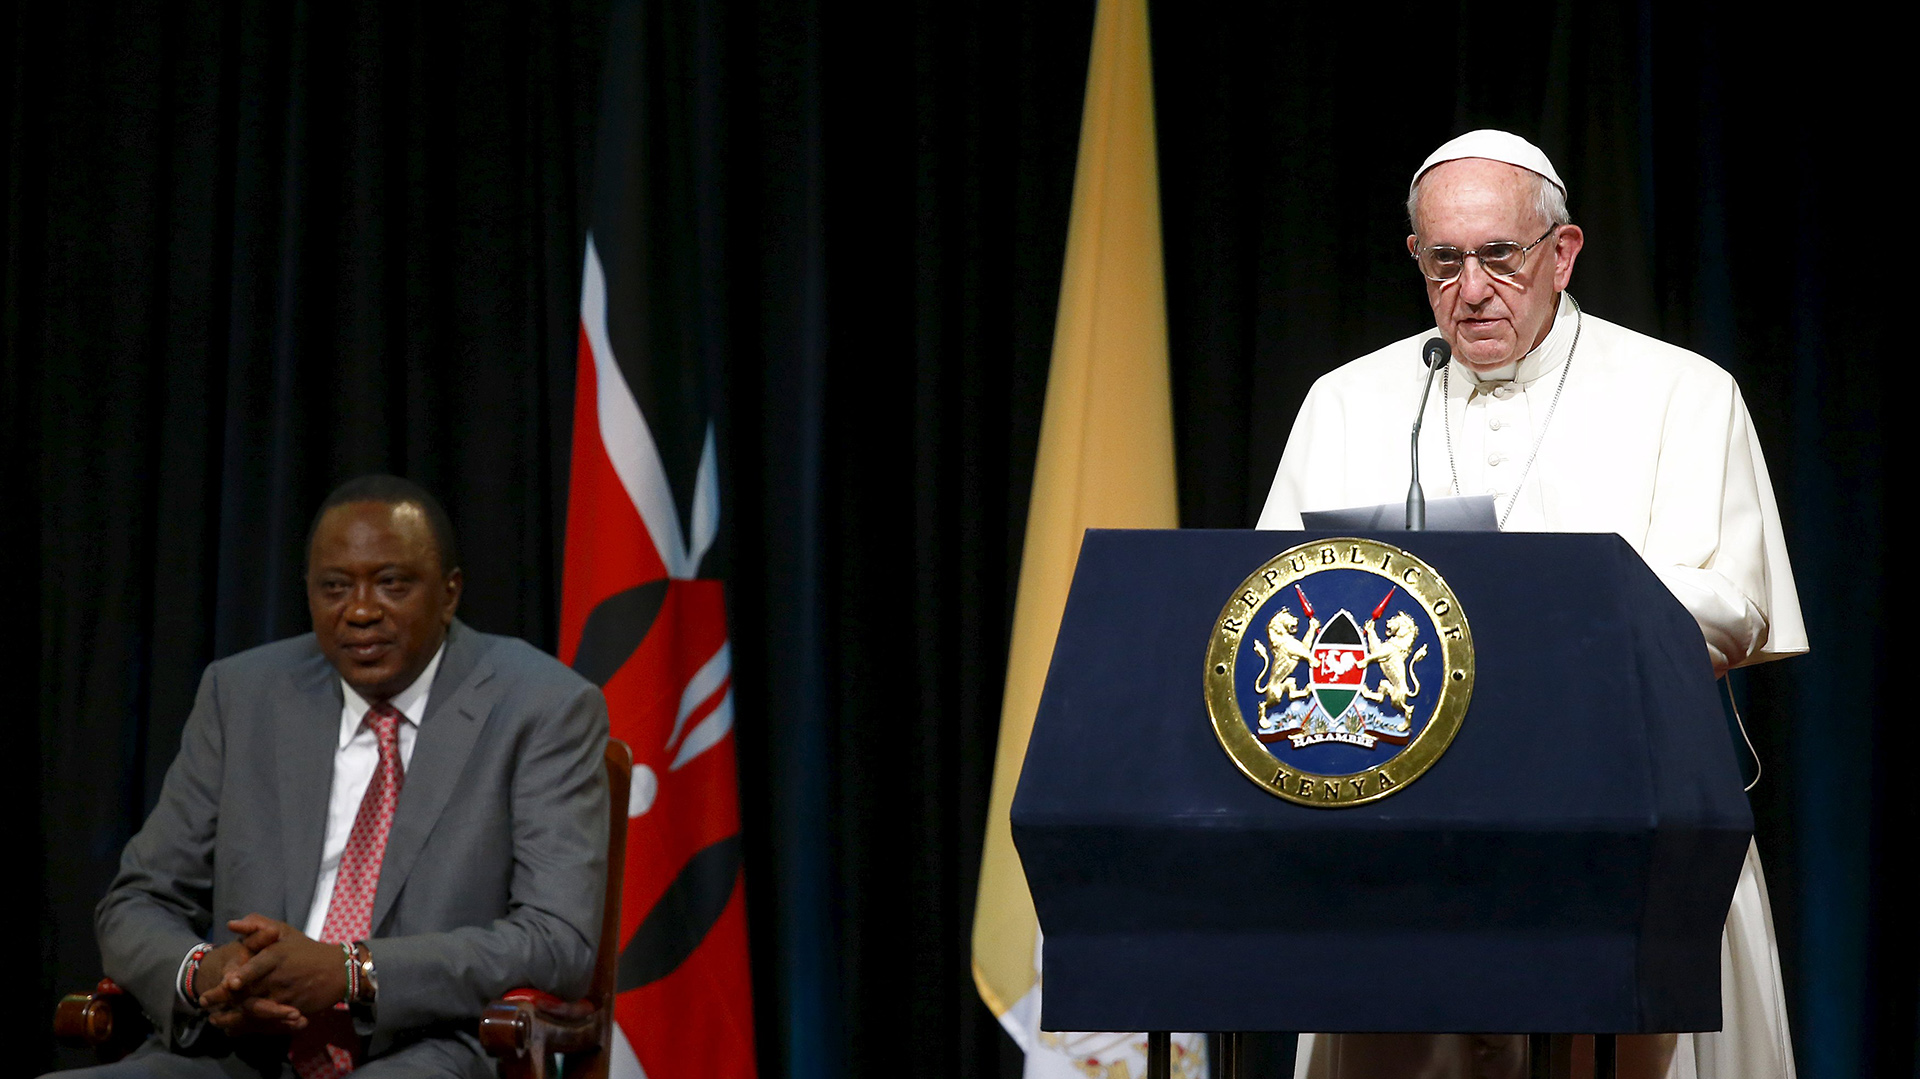 El papa Francisco ante la ONU hizo un llamado a los líderes mundiales para frenar el cambio climático (Reuters/Stefano Rellandini)